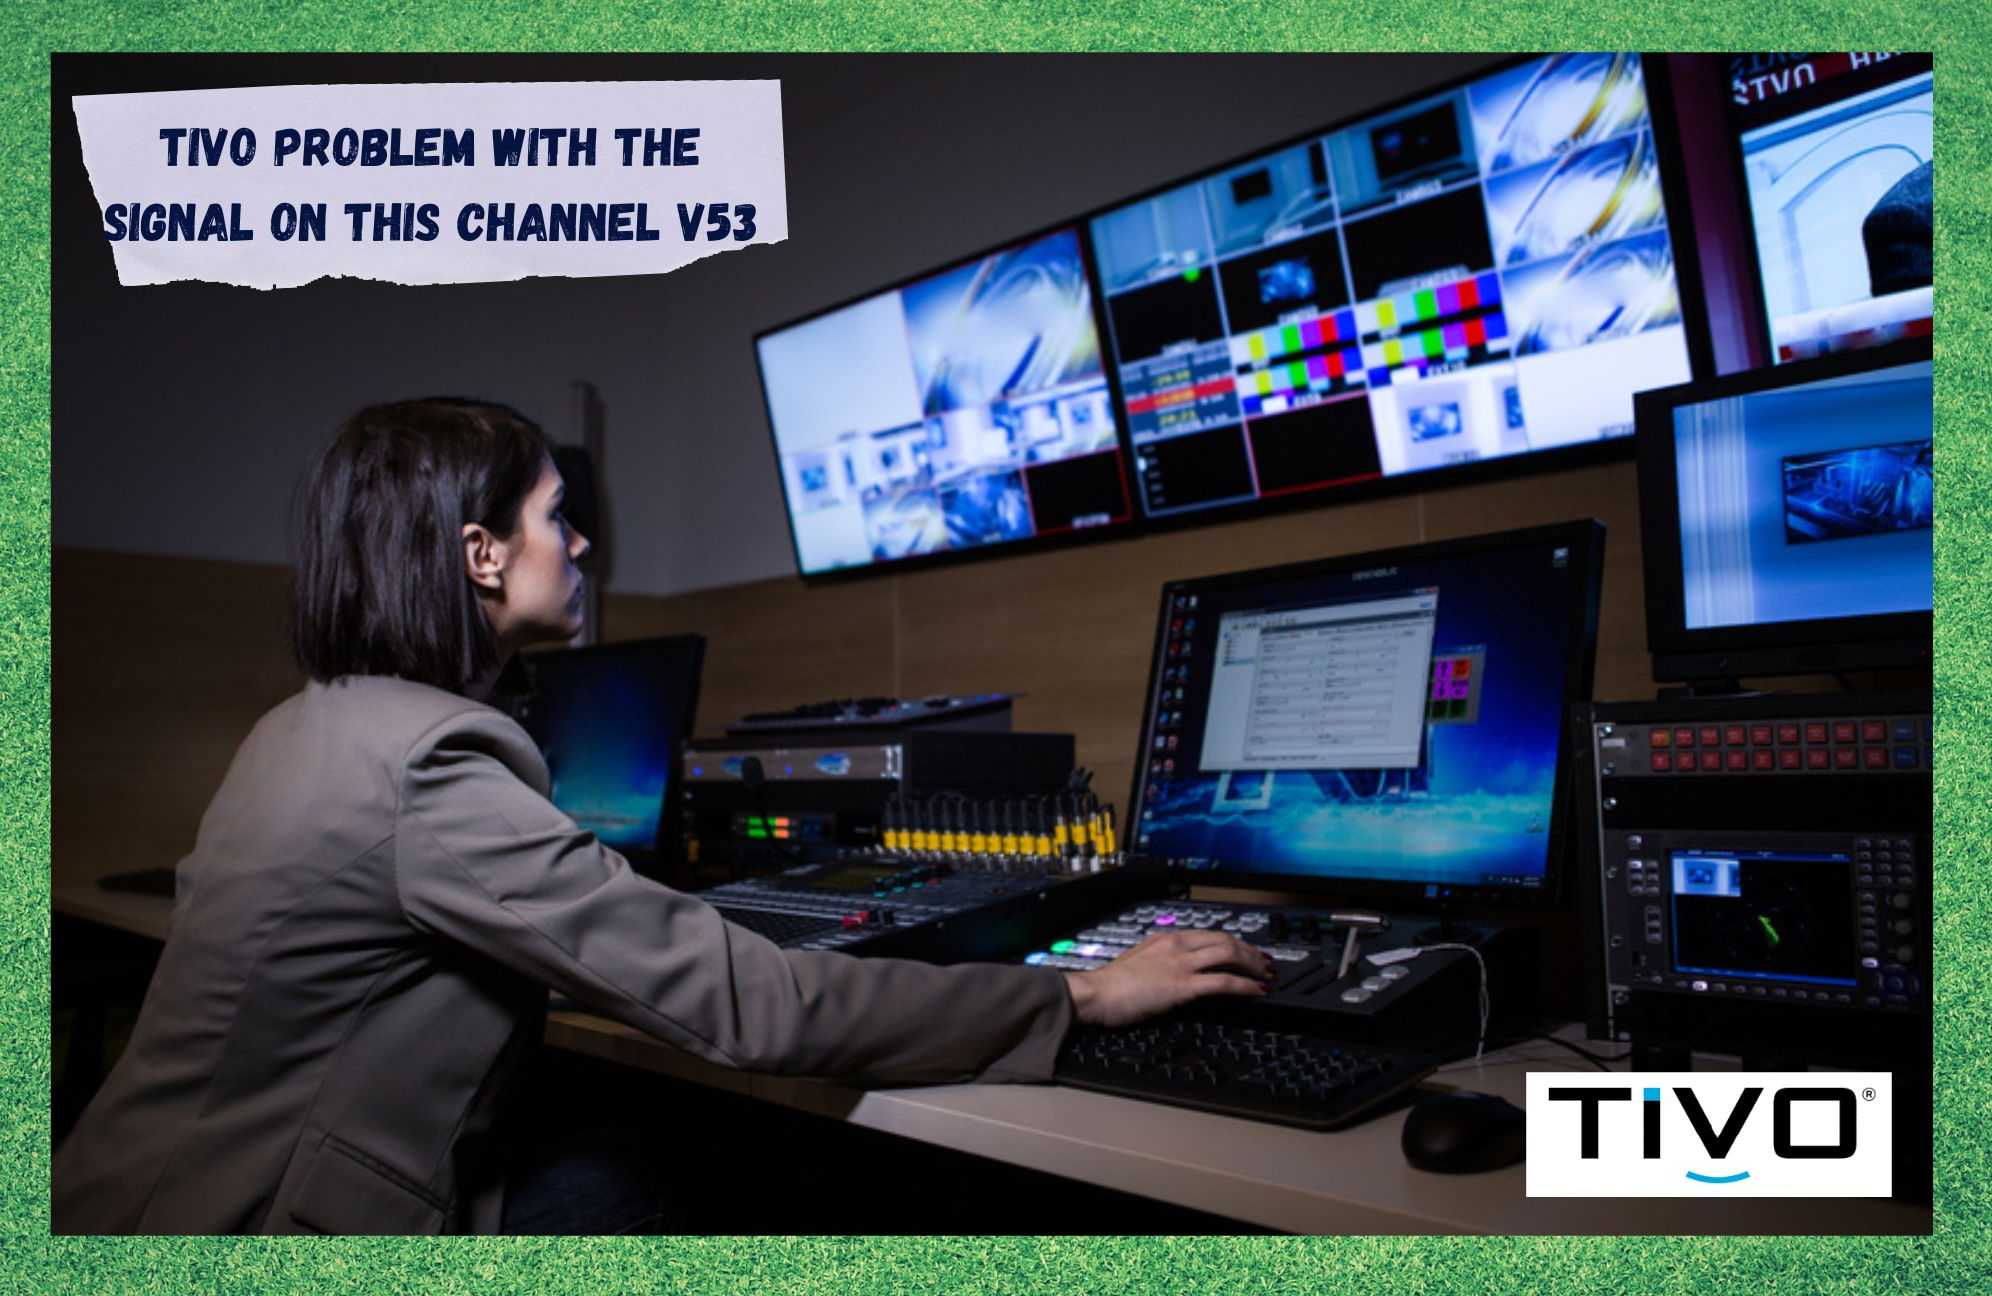 TiVo: مشكلة في الإشارة على هذه القناة V53 (استكشاف الأخطاء وإصلاحها)